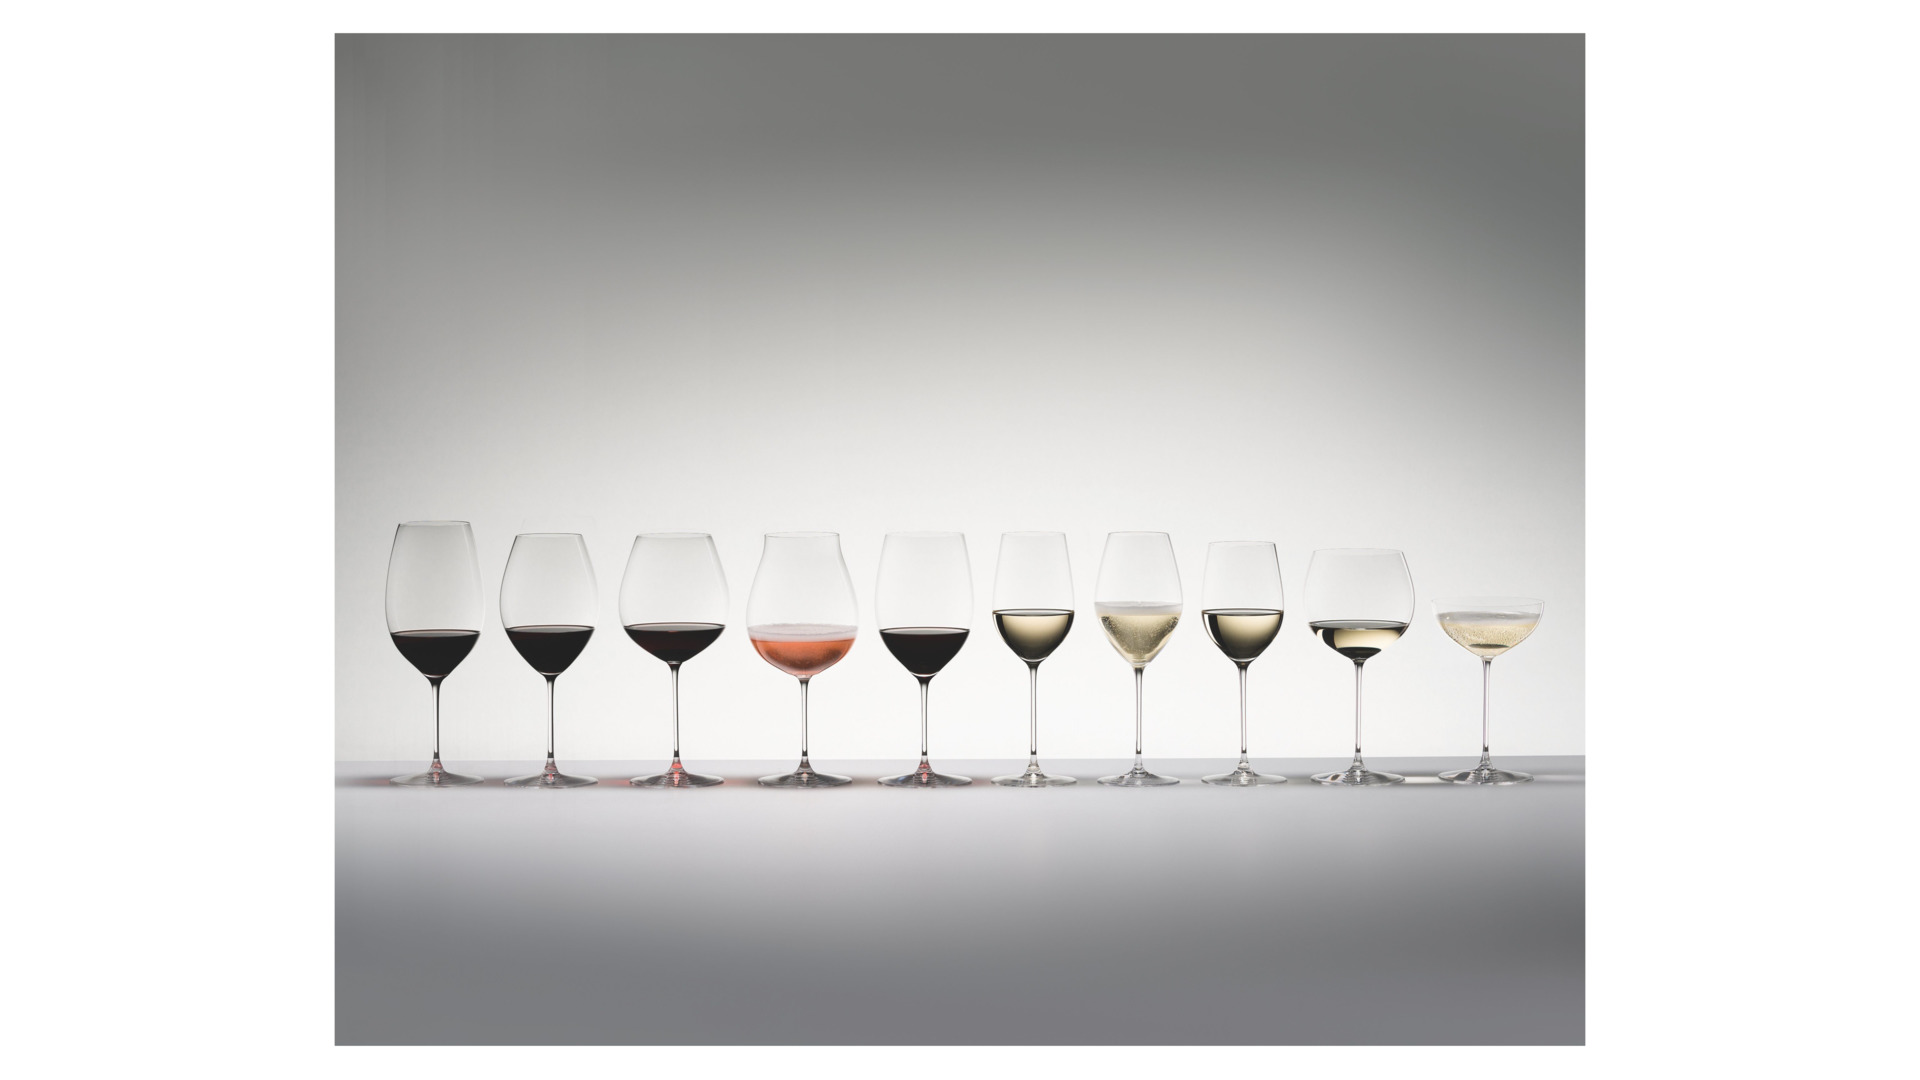 Набор бокалов для красного вина Riedel Veritas New World Shiraz 709 мл, 2 шт, стекло хрустальное